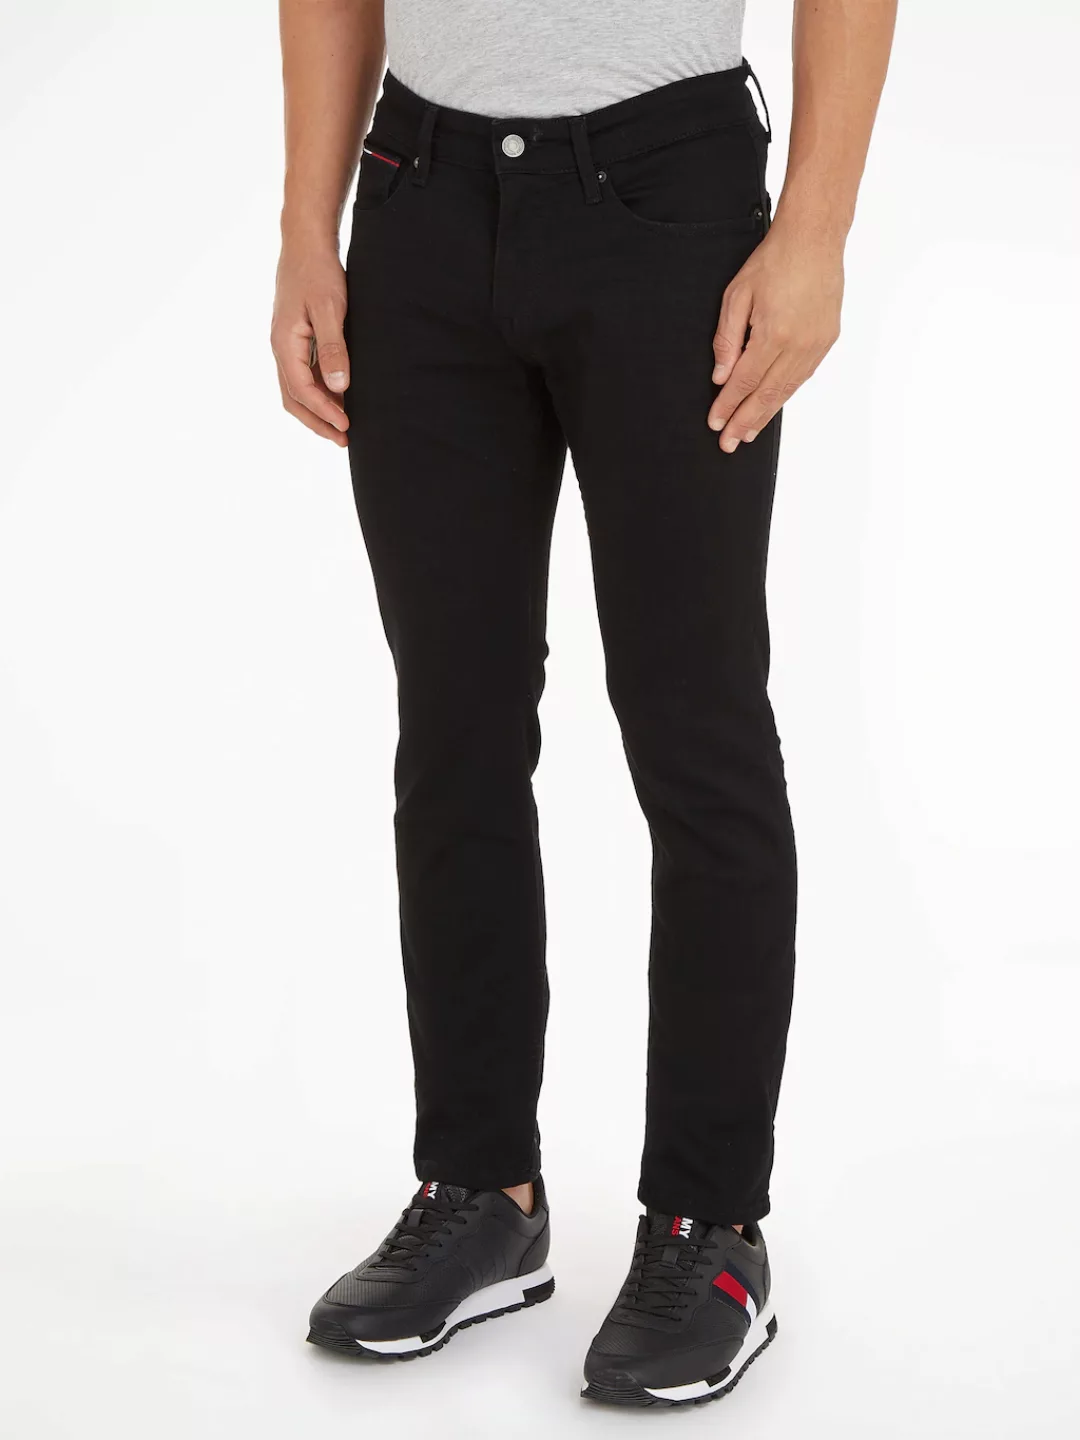 Tommy Jeans Slim-fit-Jeans "SLIM SCANTON" günstig online kaufen